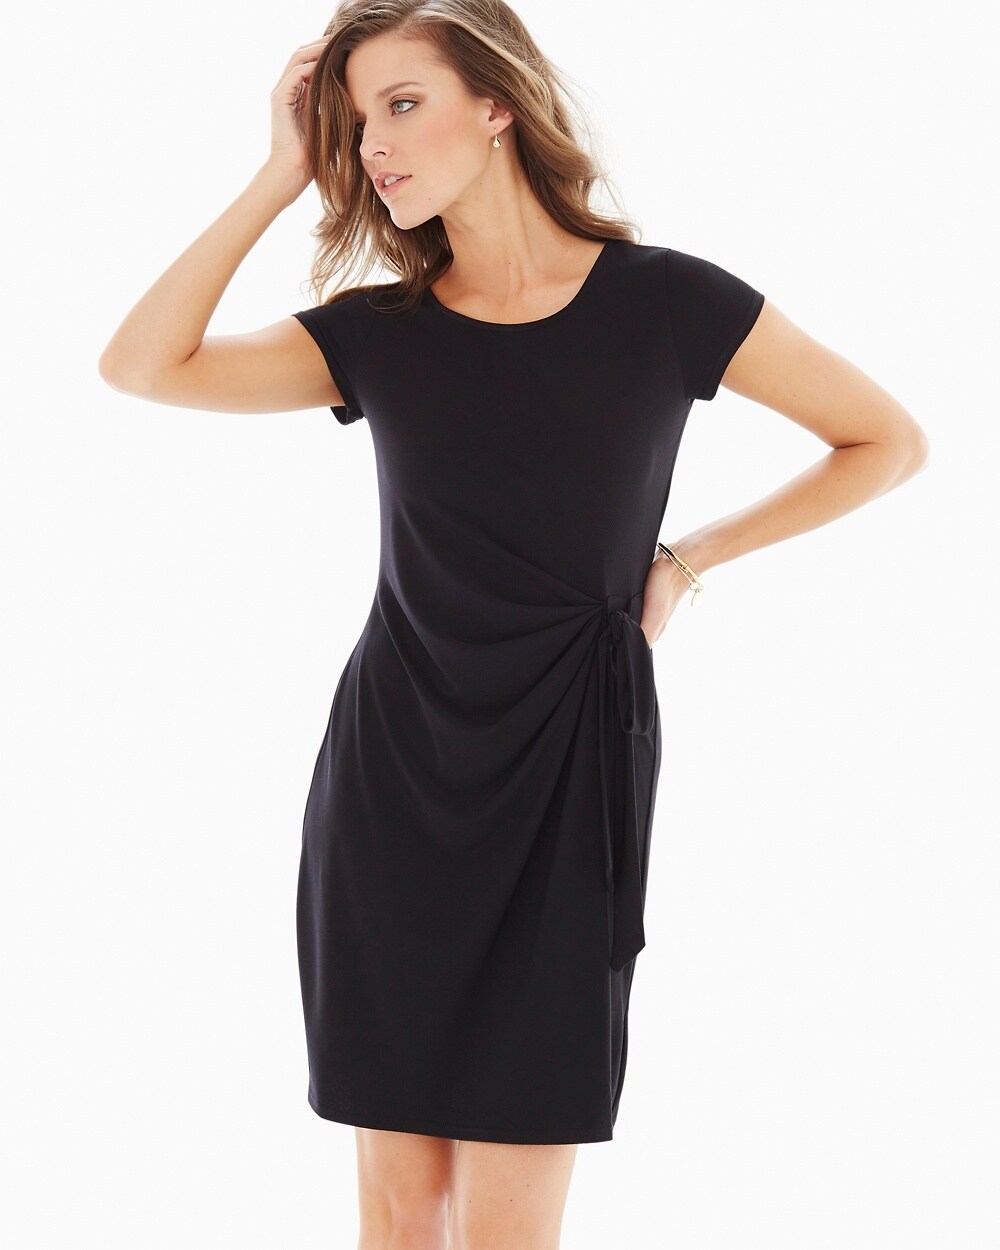 Leota Short Sleeve Madison Dress Black